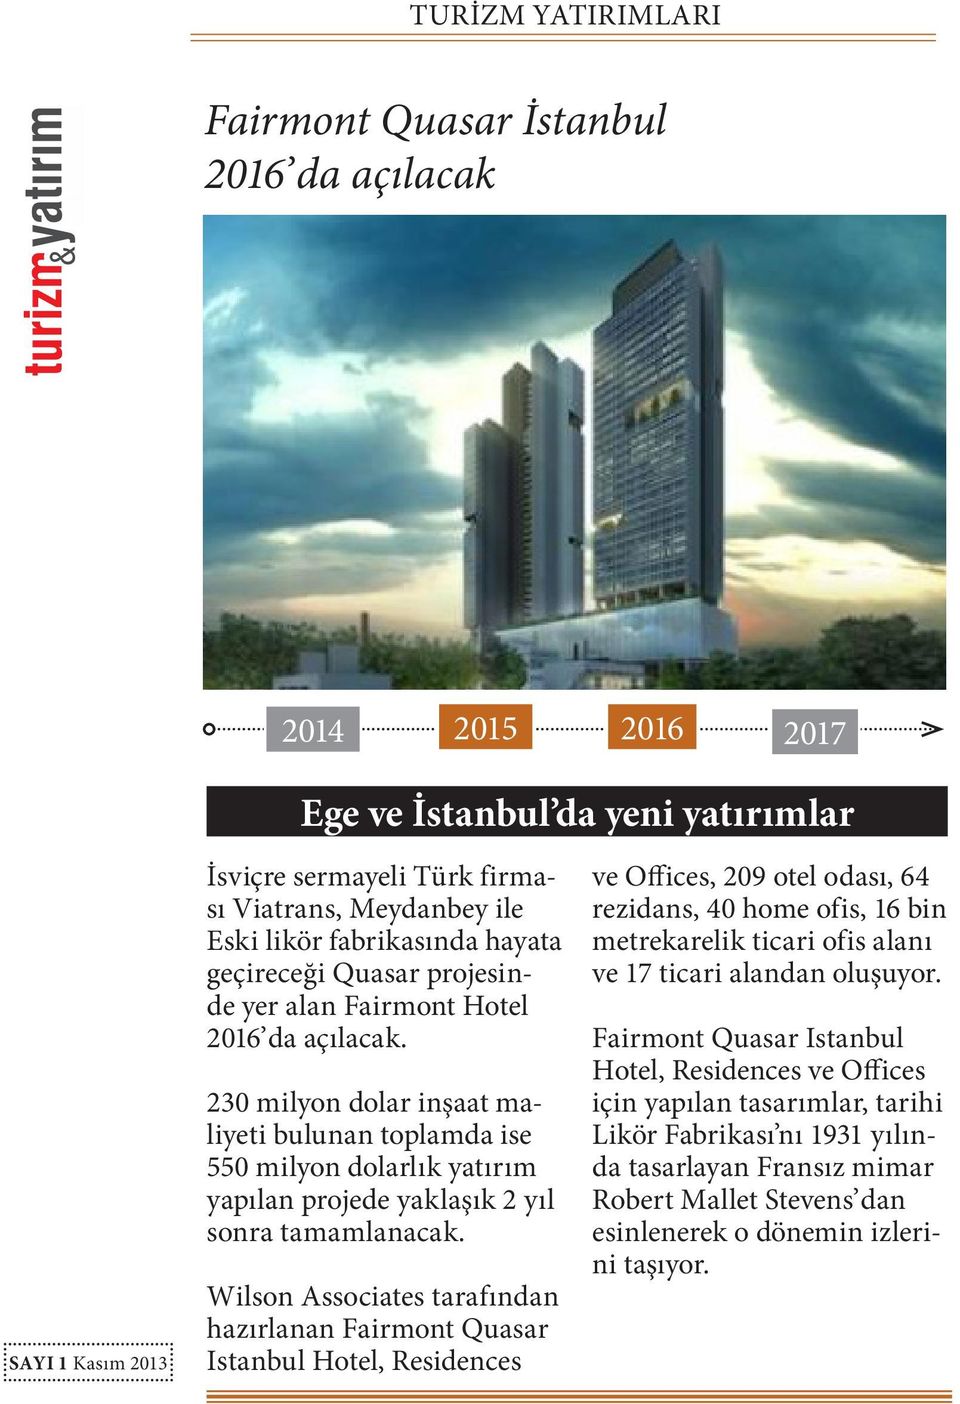 Wilson Associates tarafından hazırlanan Fairmont Quasar Istanbul Hotel, Residences ve Offices, 209 otel odası, 64 rezidans, 40 home ofis, 16 bin metrekarelik ticari ofis alanı ve 17 ticari